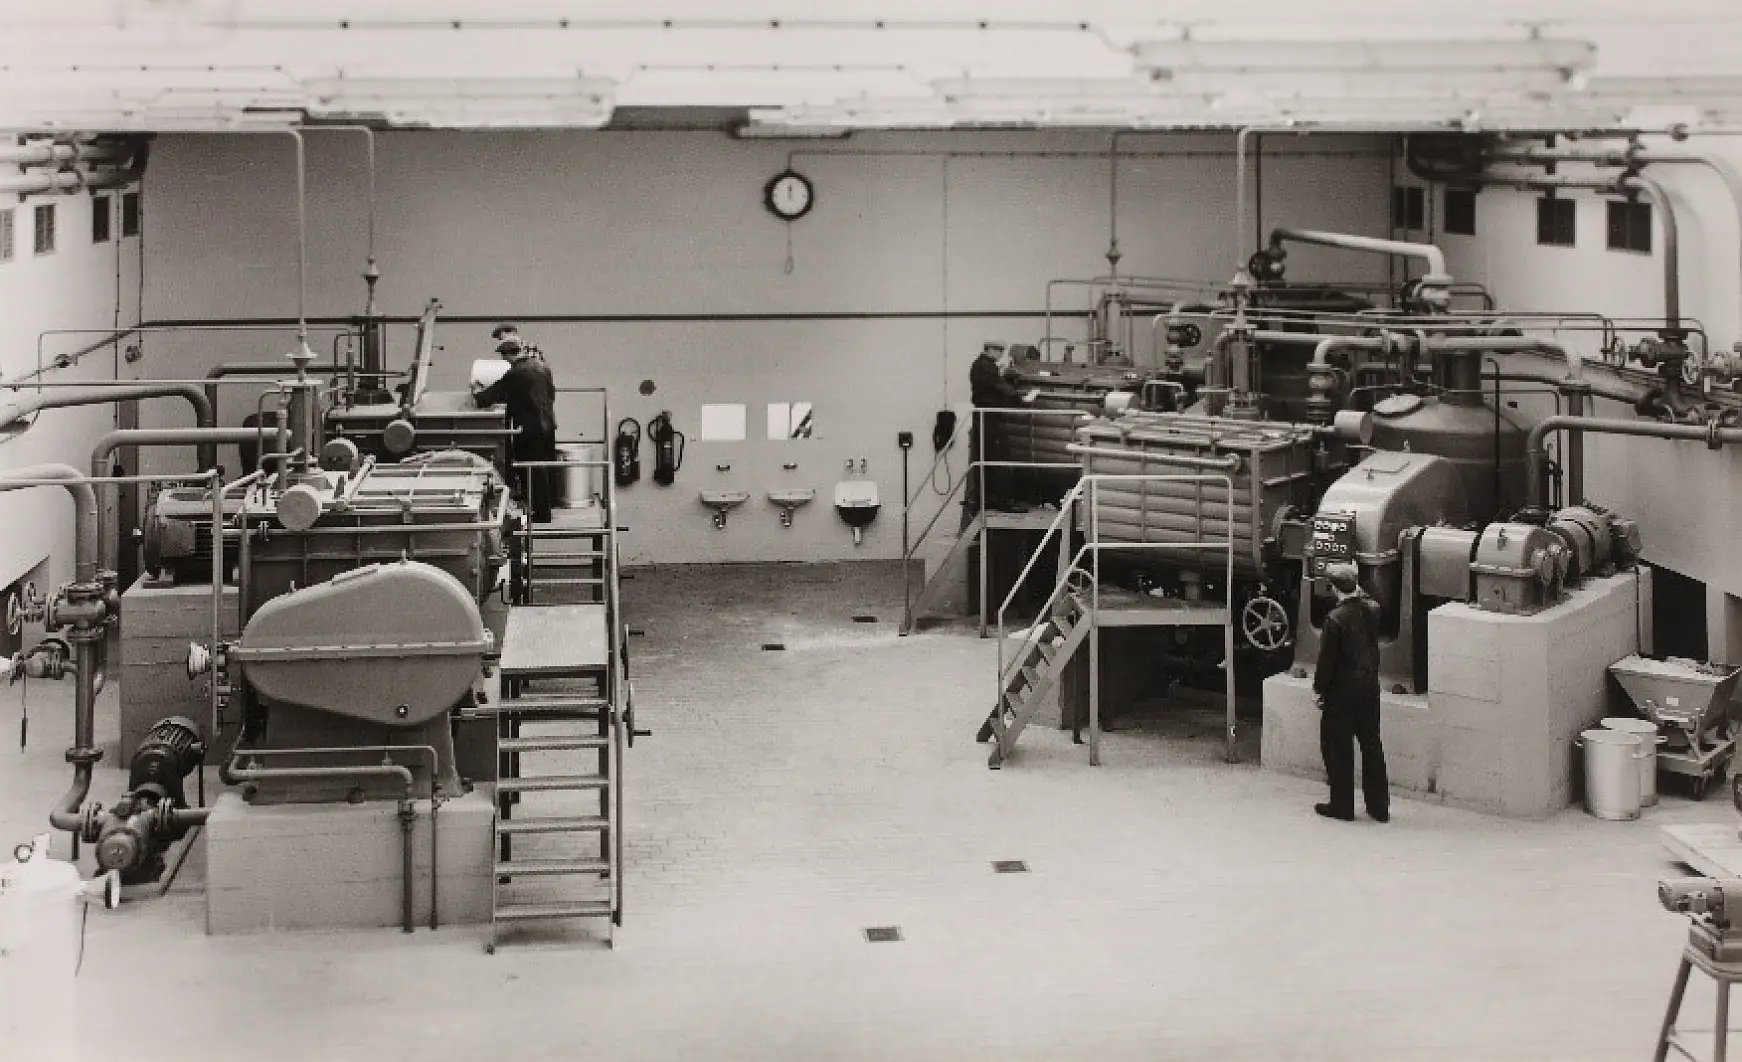 I 1961 fant tilberedningen av klebemidler med gummi, harpikser og andre råvarer sted i elterommet.